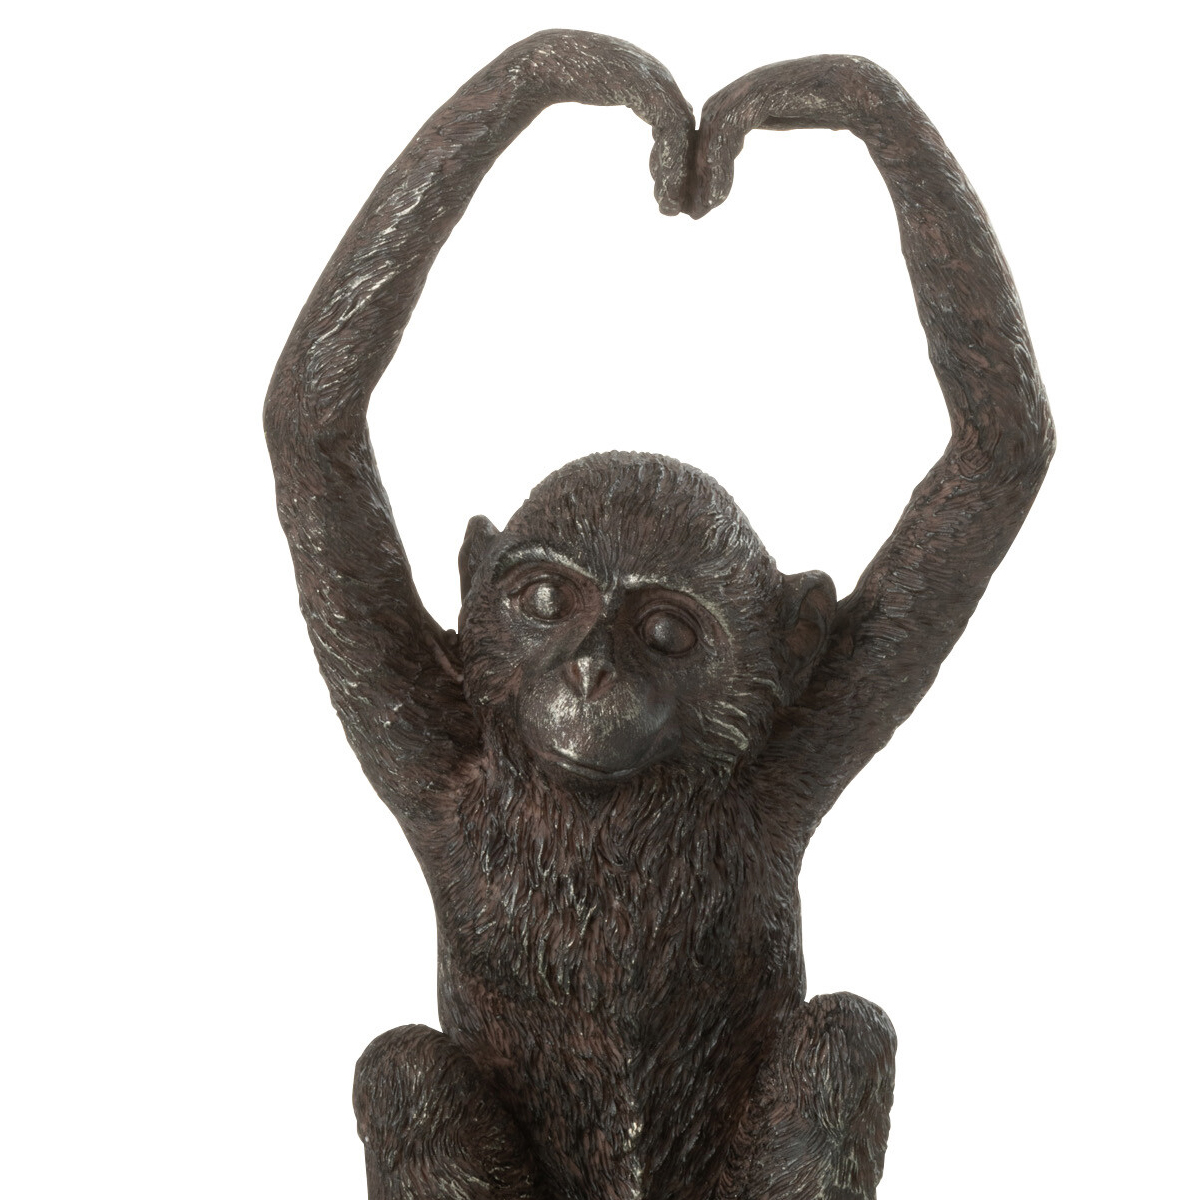 Heart-shaped monkey statuette